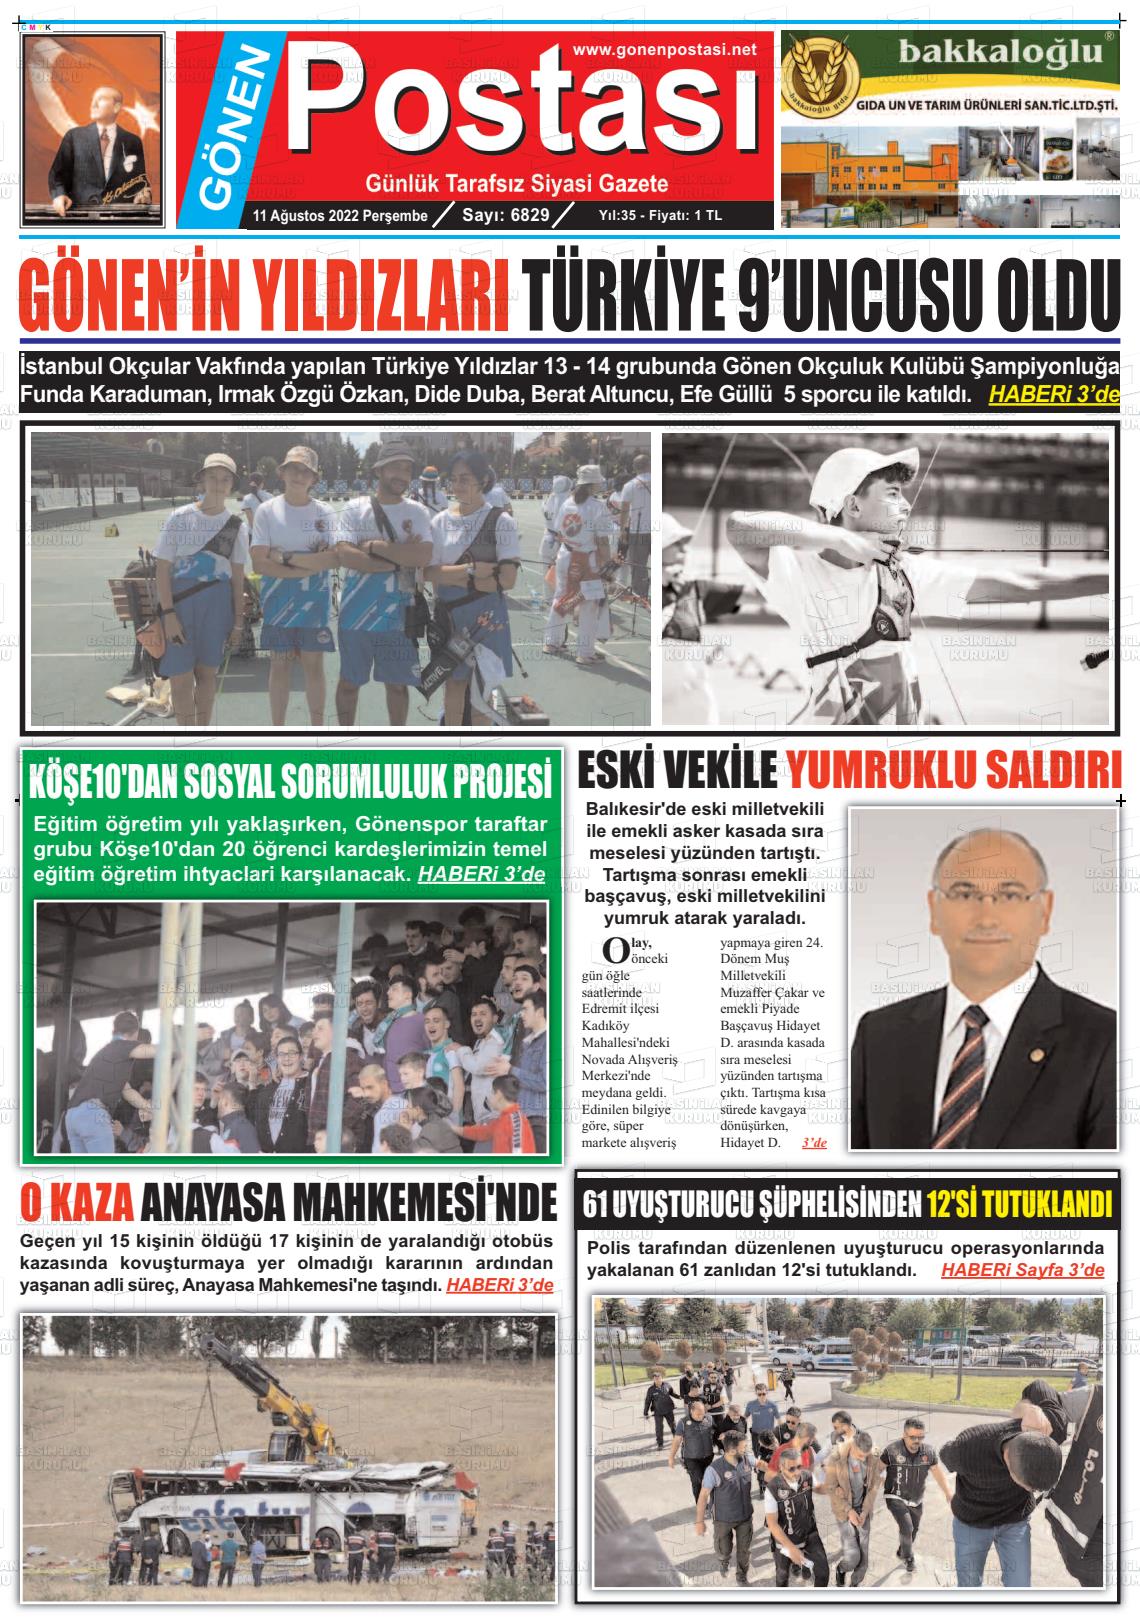 11 Ağustos 2022 Gönen Postası Gazete Manşeti